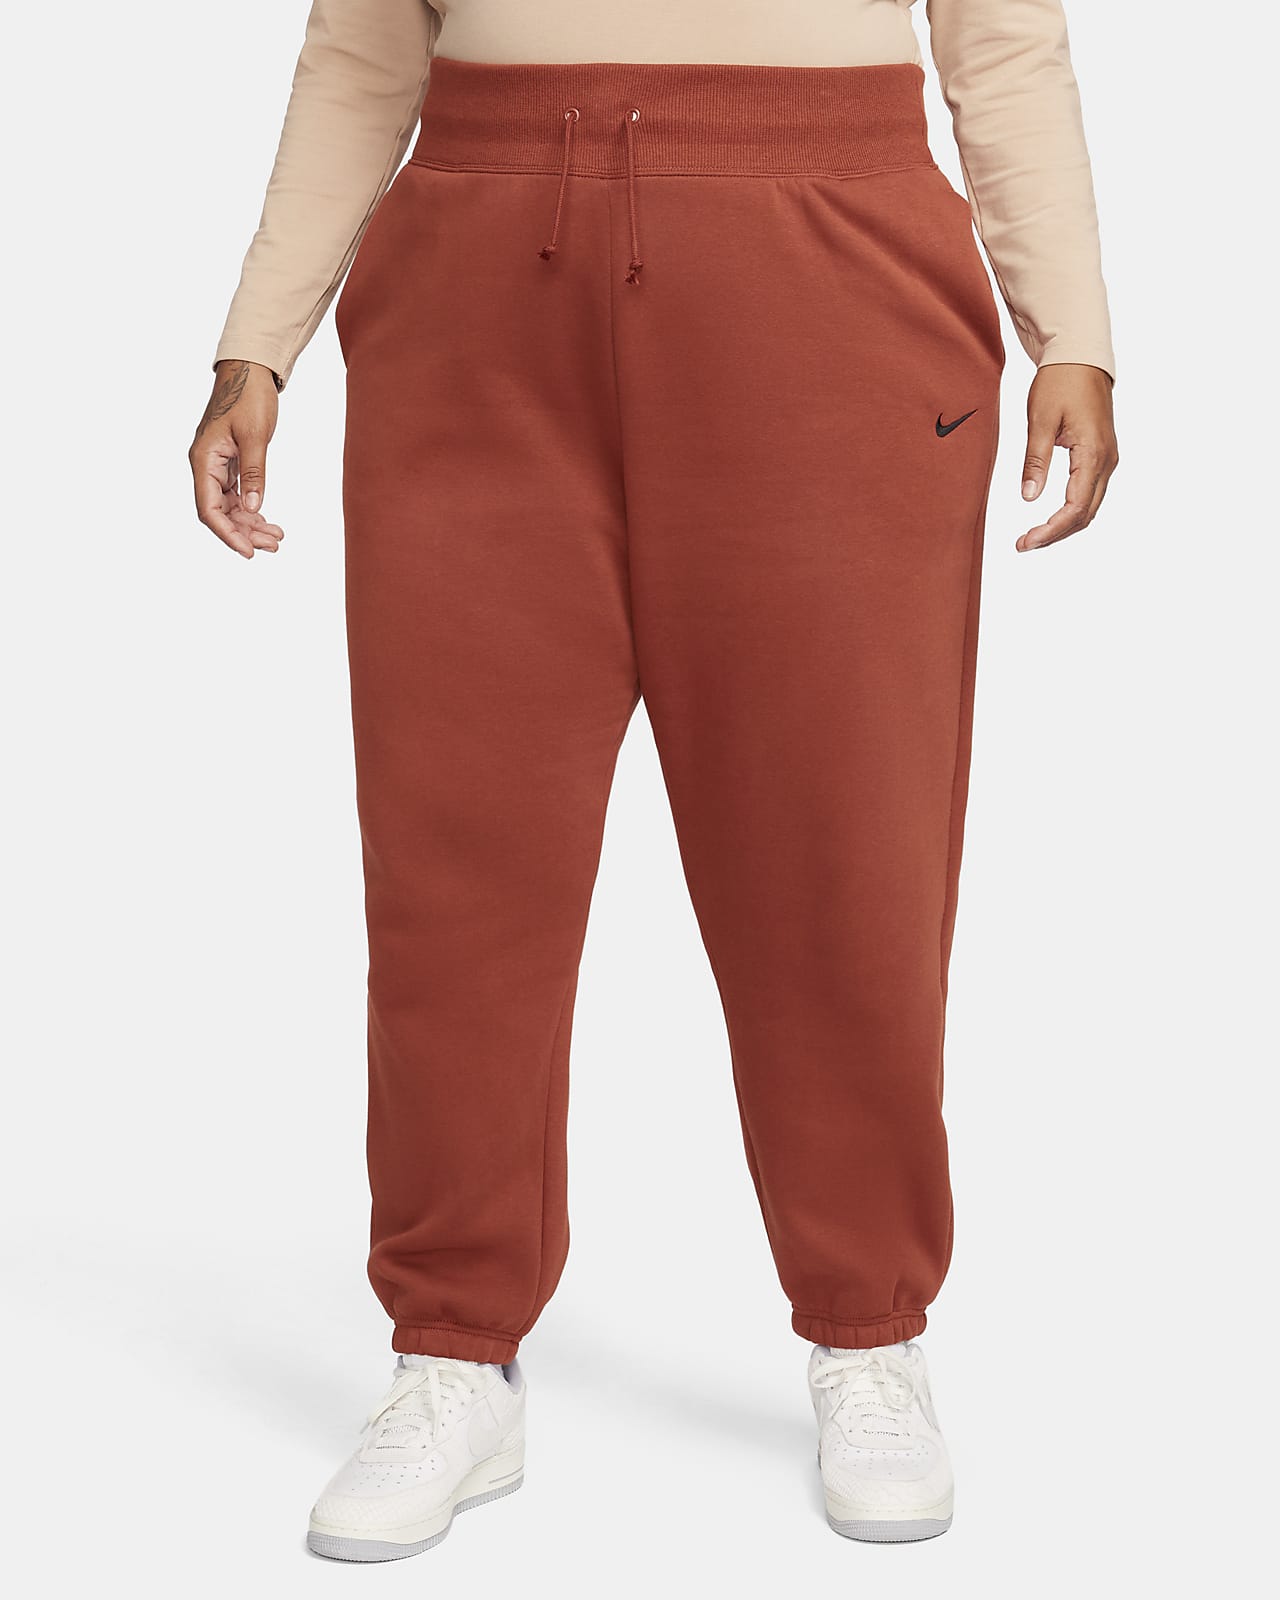 Nike Sportswear Phoenix Fleece Women's High-Waisted Oversized Sweatpants (Plus Size)